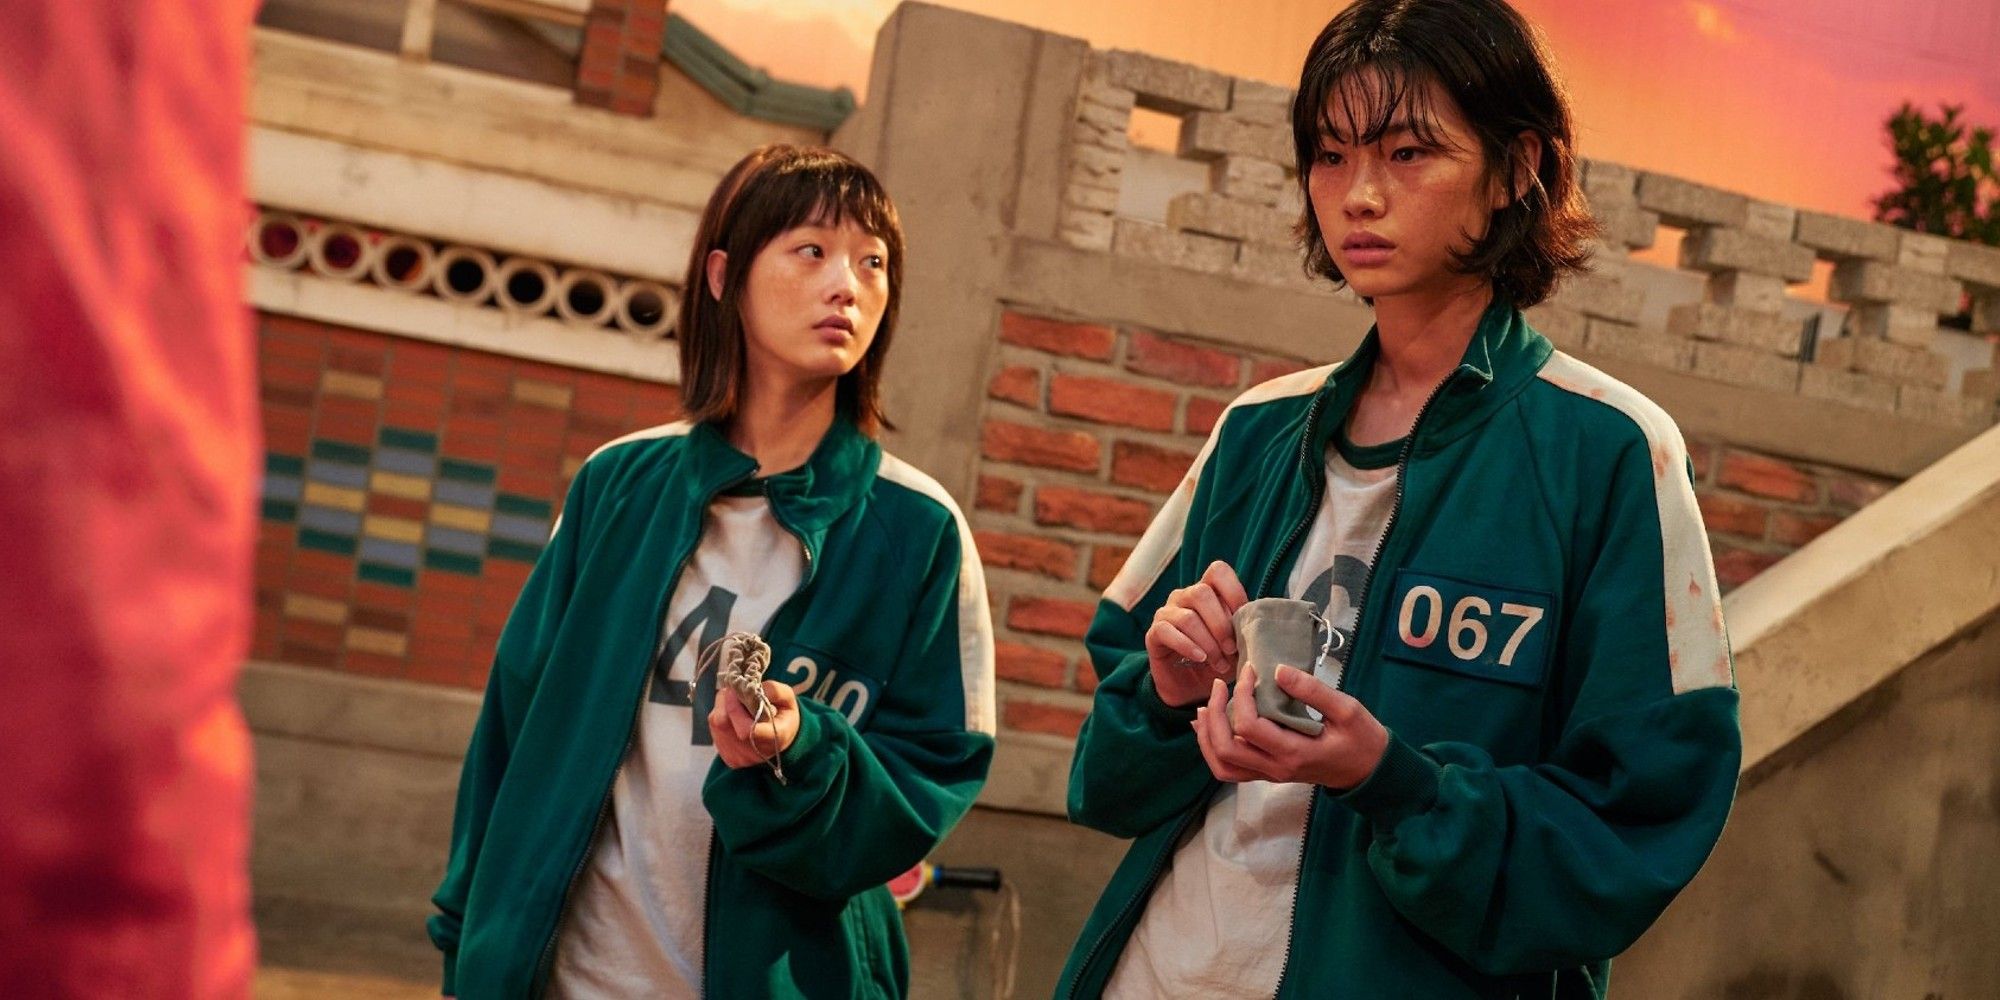 Squid Game HoYeon Jung as Kang Sae-byeok and Lee Yoo-mi as Ji-yeong